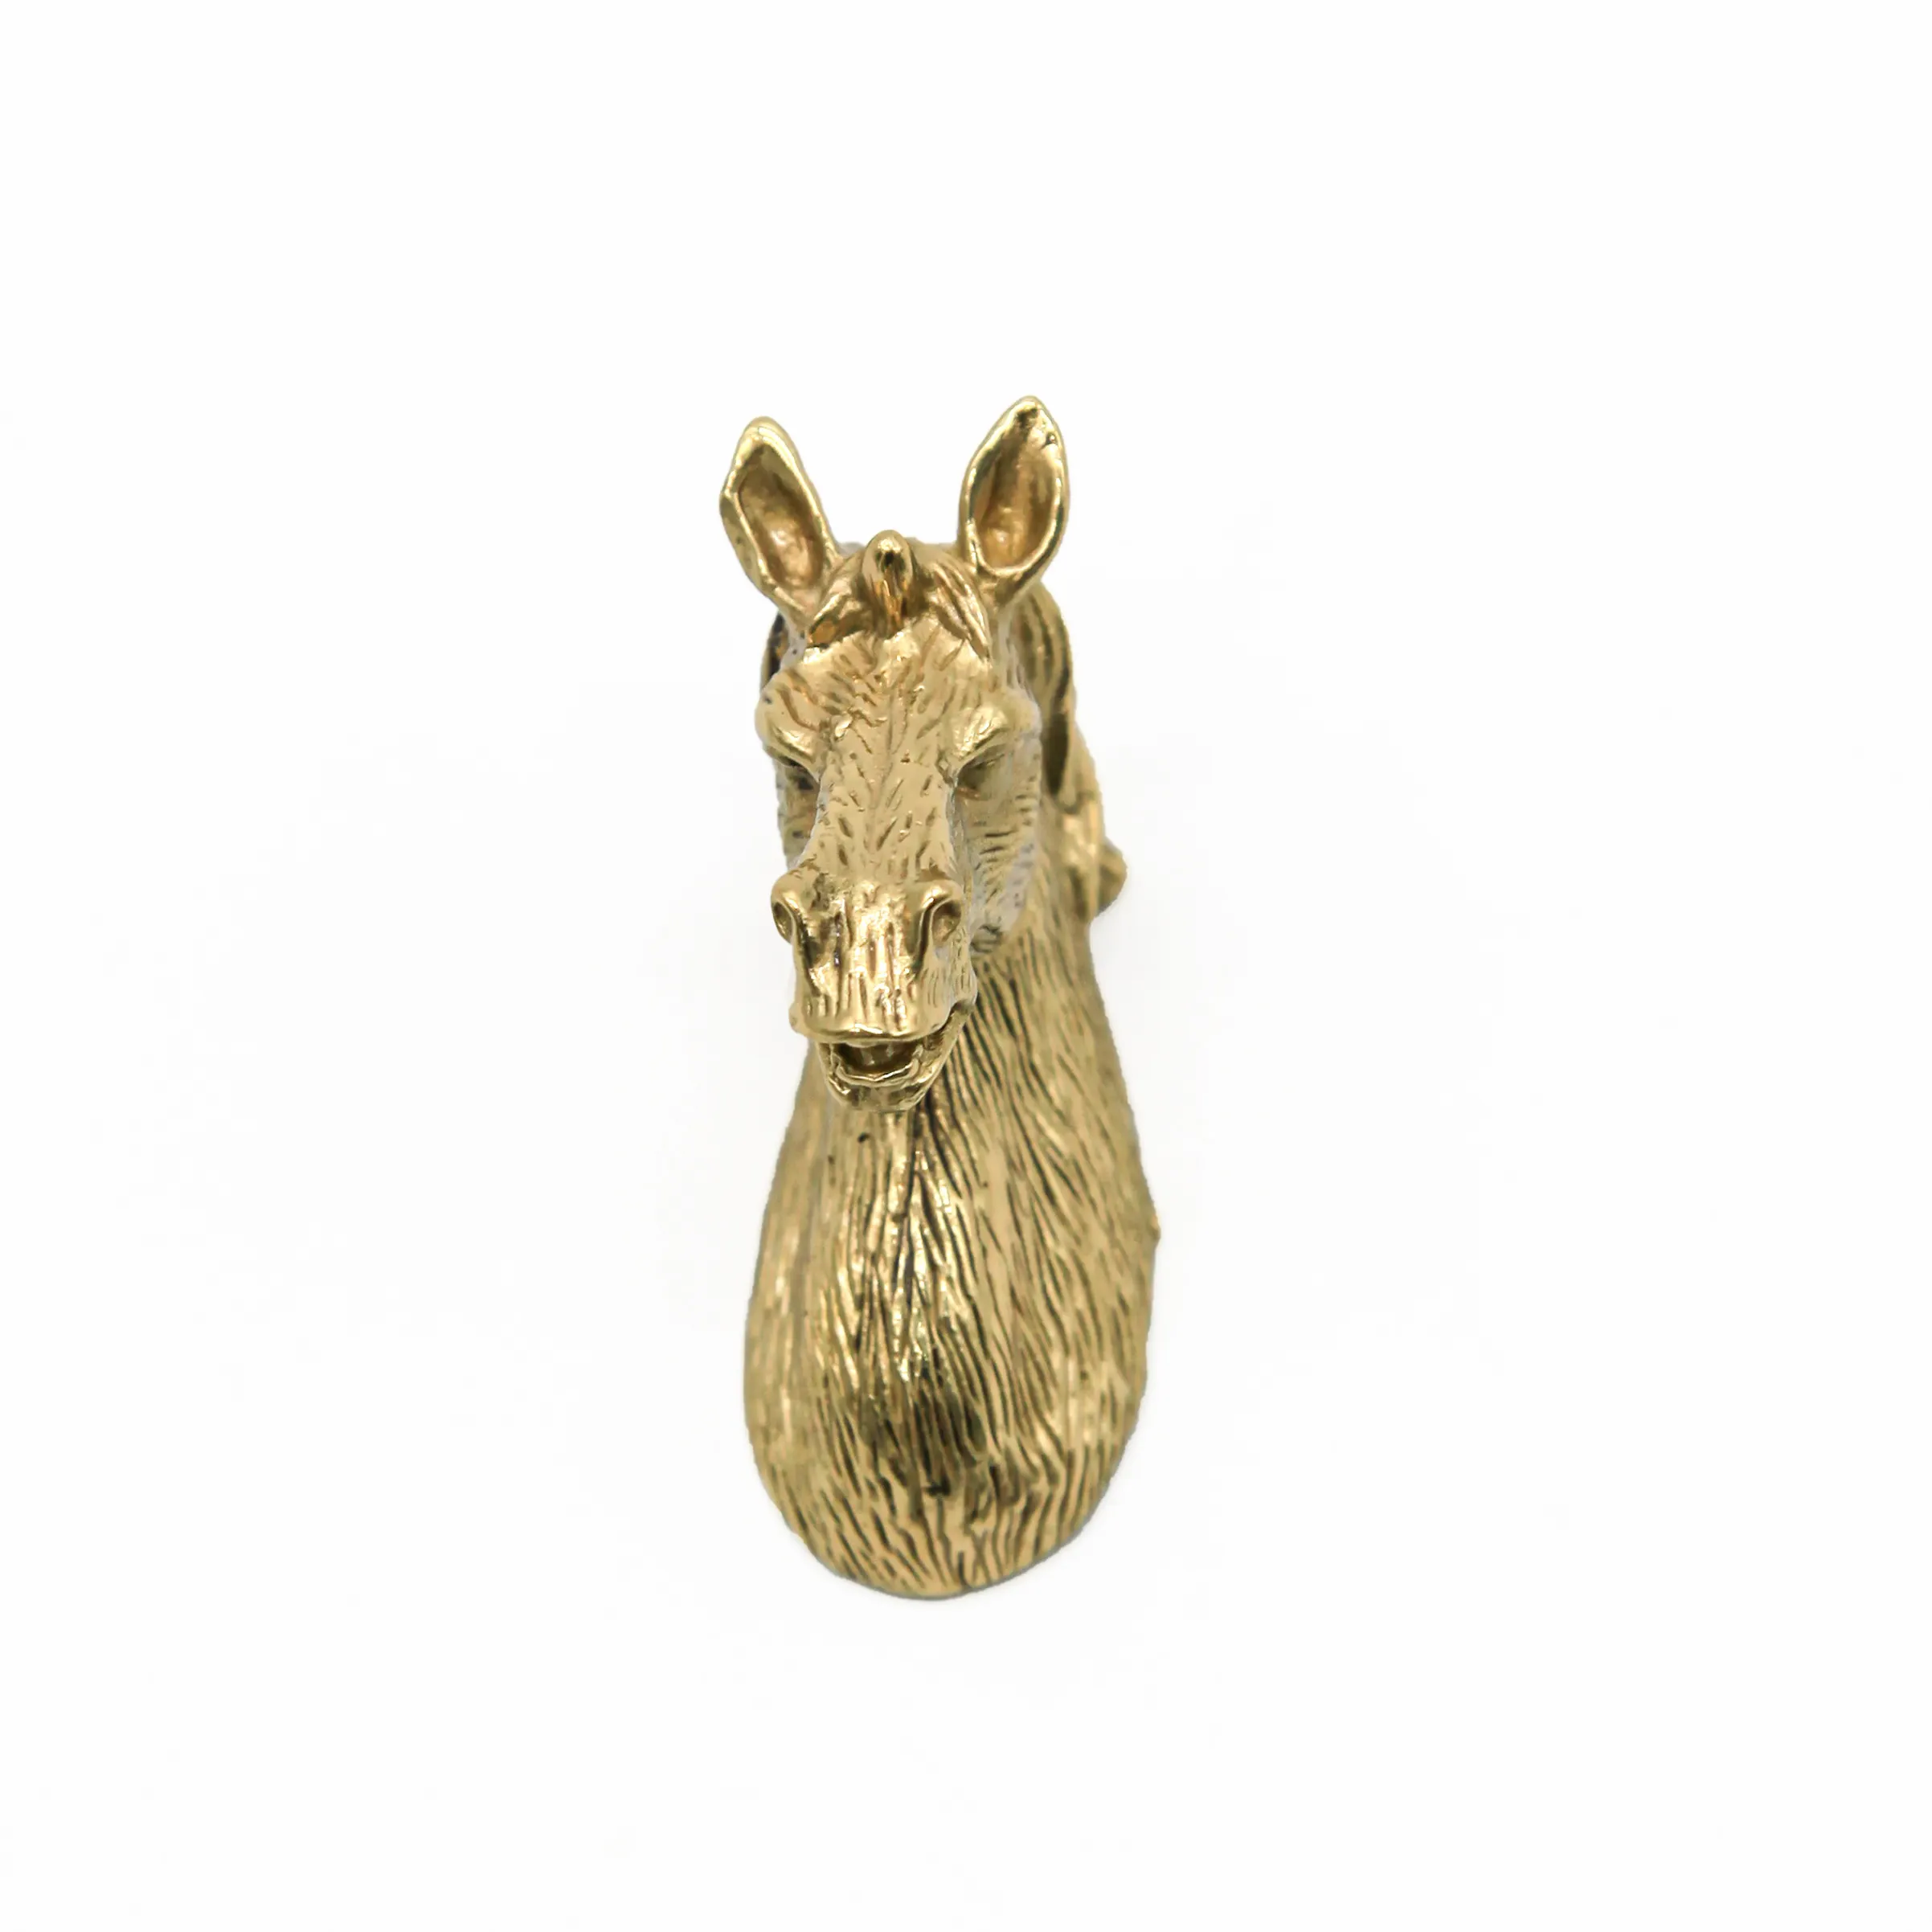 Forma Animal de manijas de latón antiguo perillas del Gabinete de Metal decorativos perillas de cajón armario manija